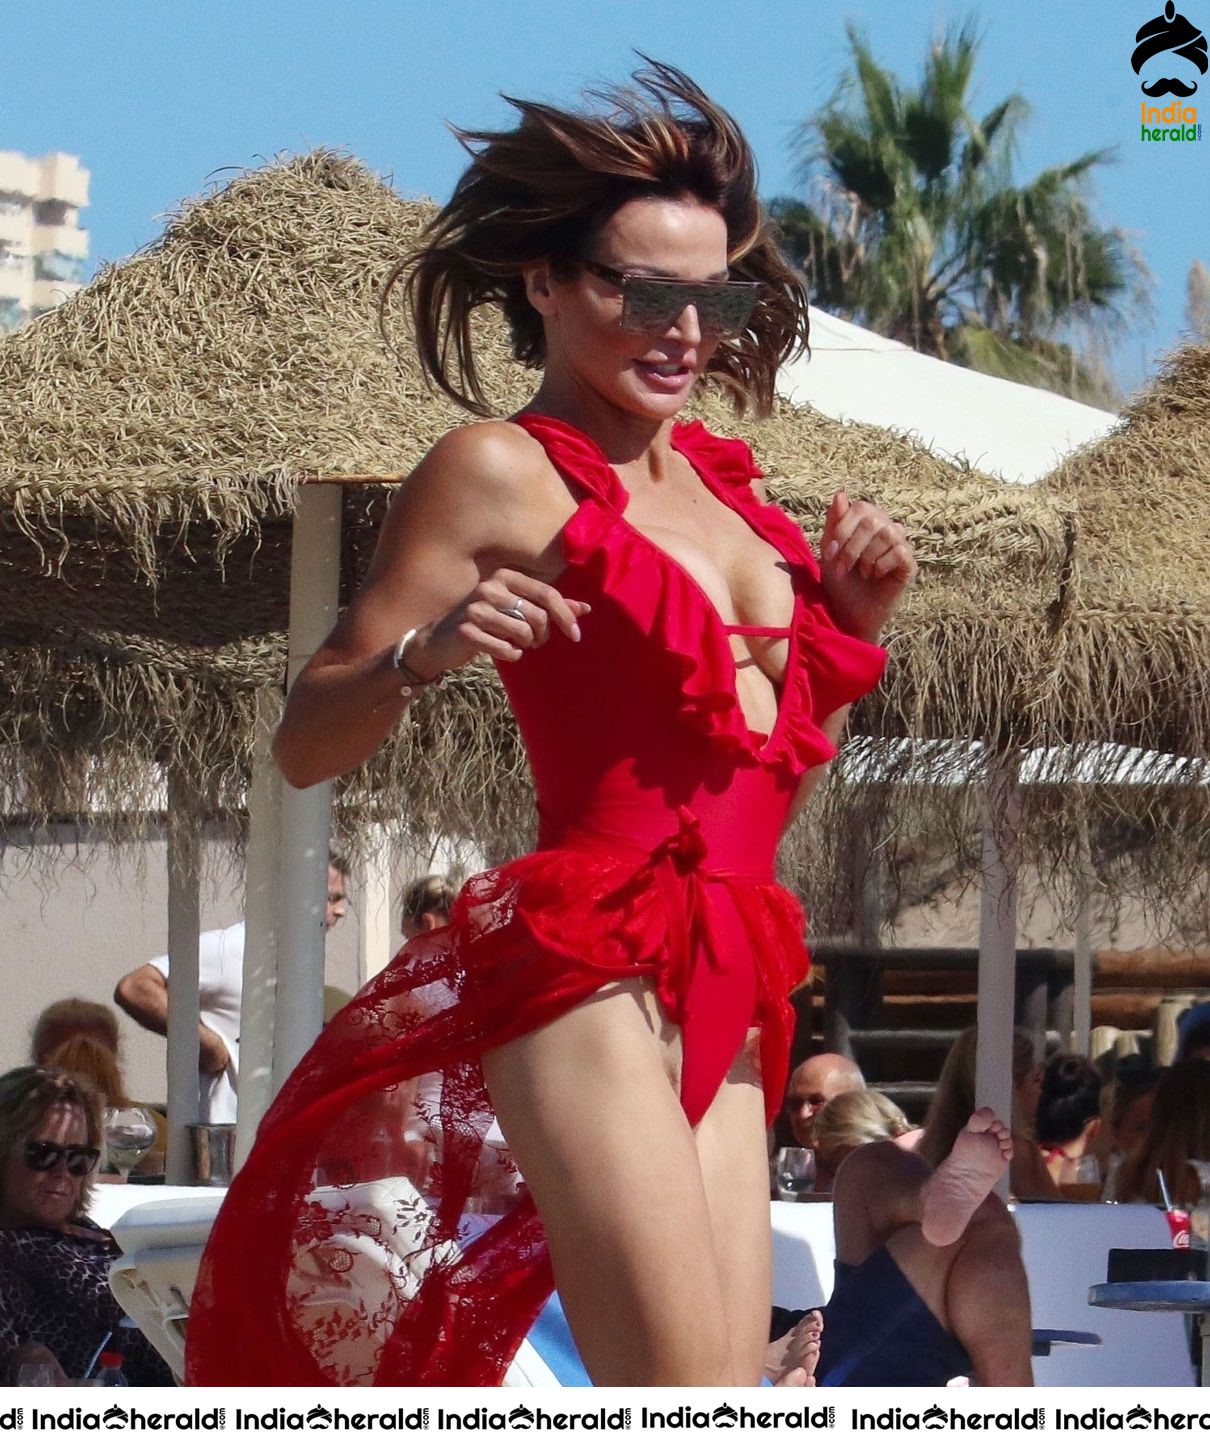 Lizzie Cundy in Bikini on the beach during a sunshine break in Marbella